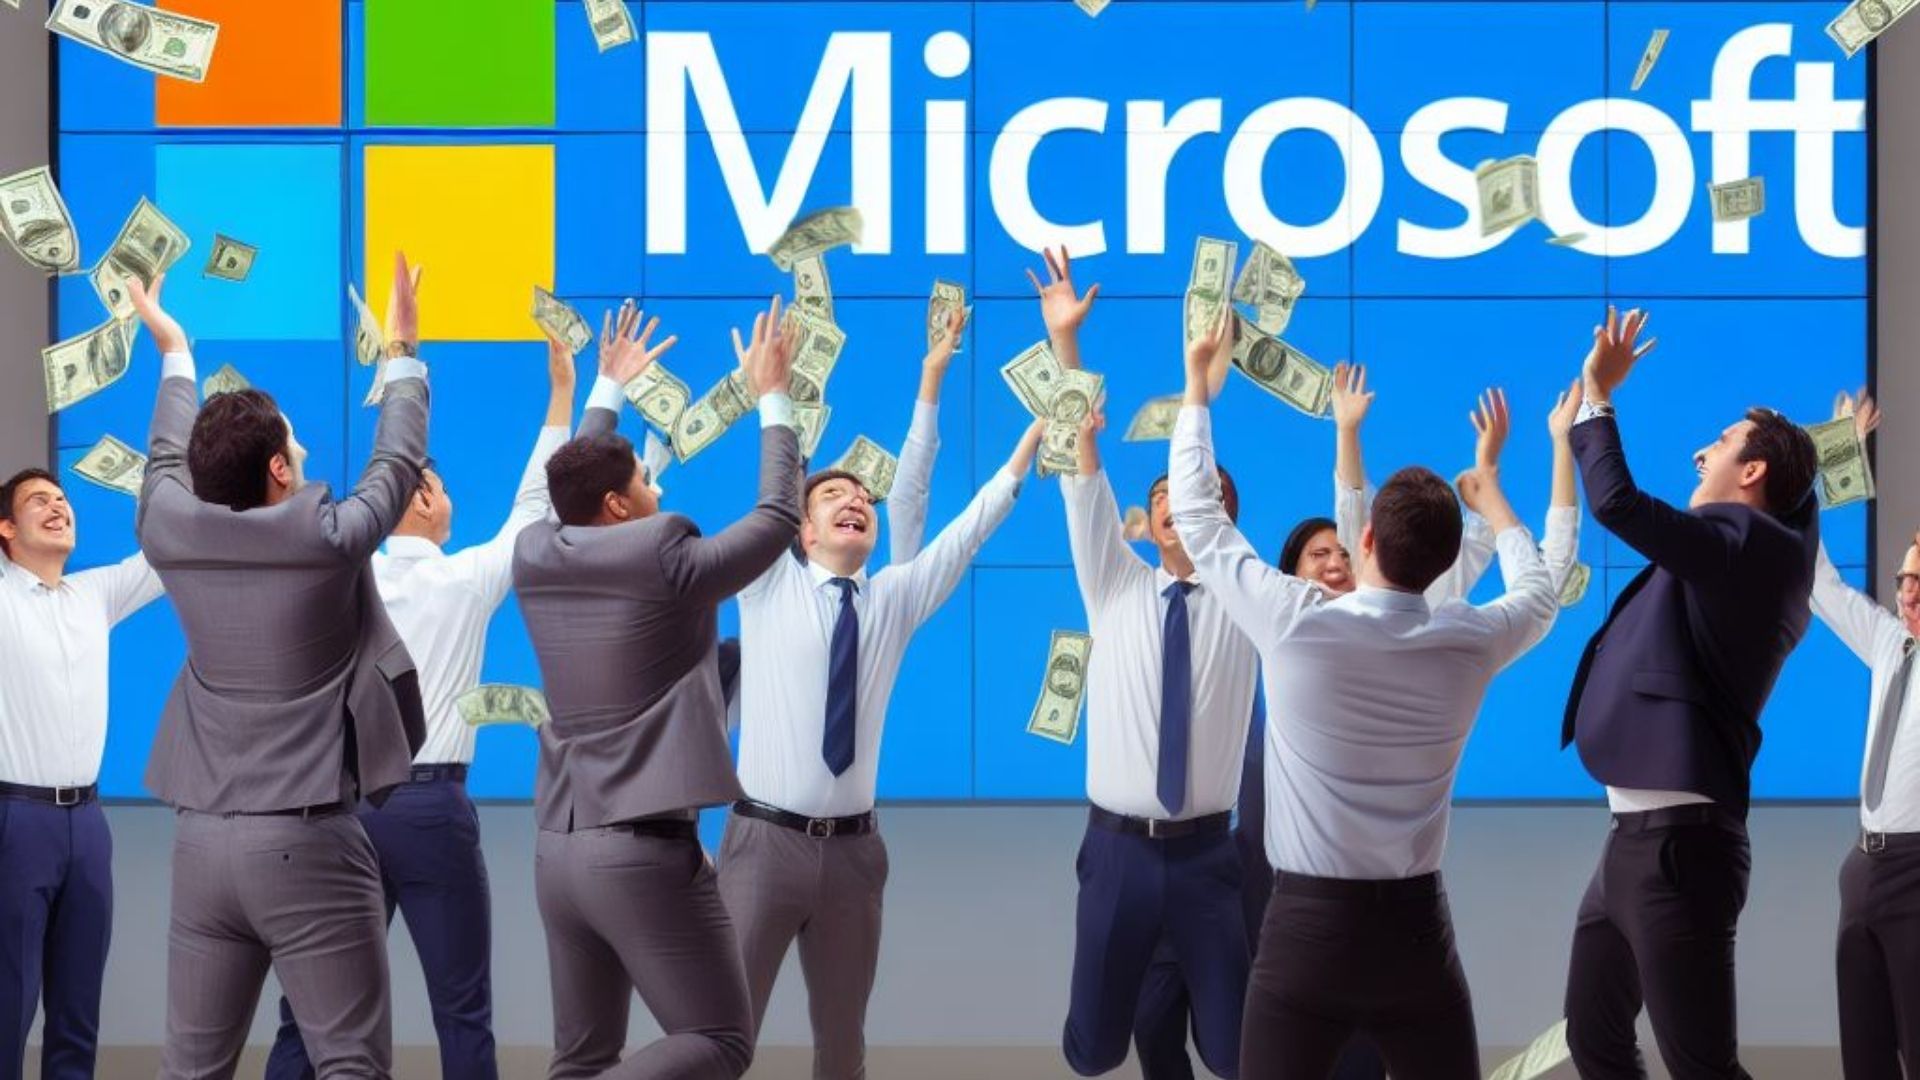 Microsoft-Mitarbeiter werfen Bargeld in die Luft